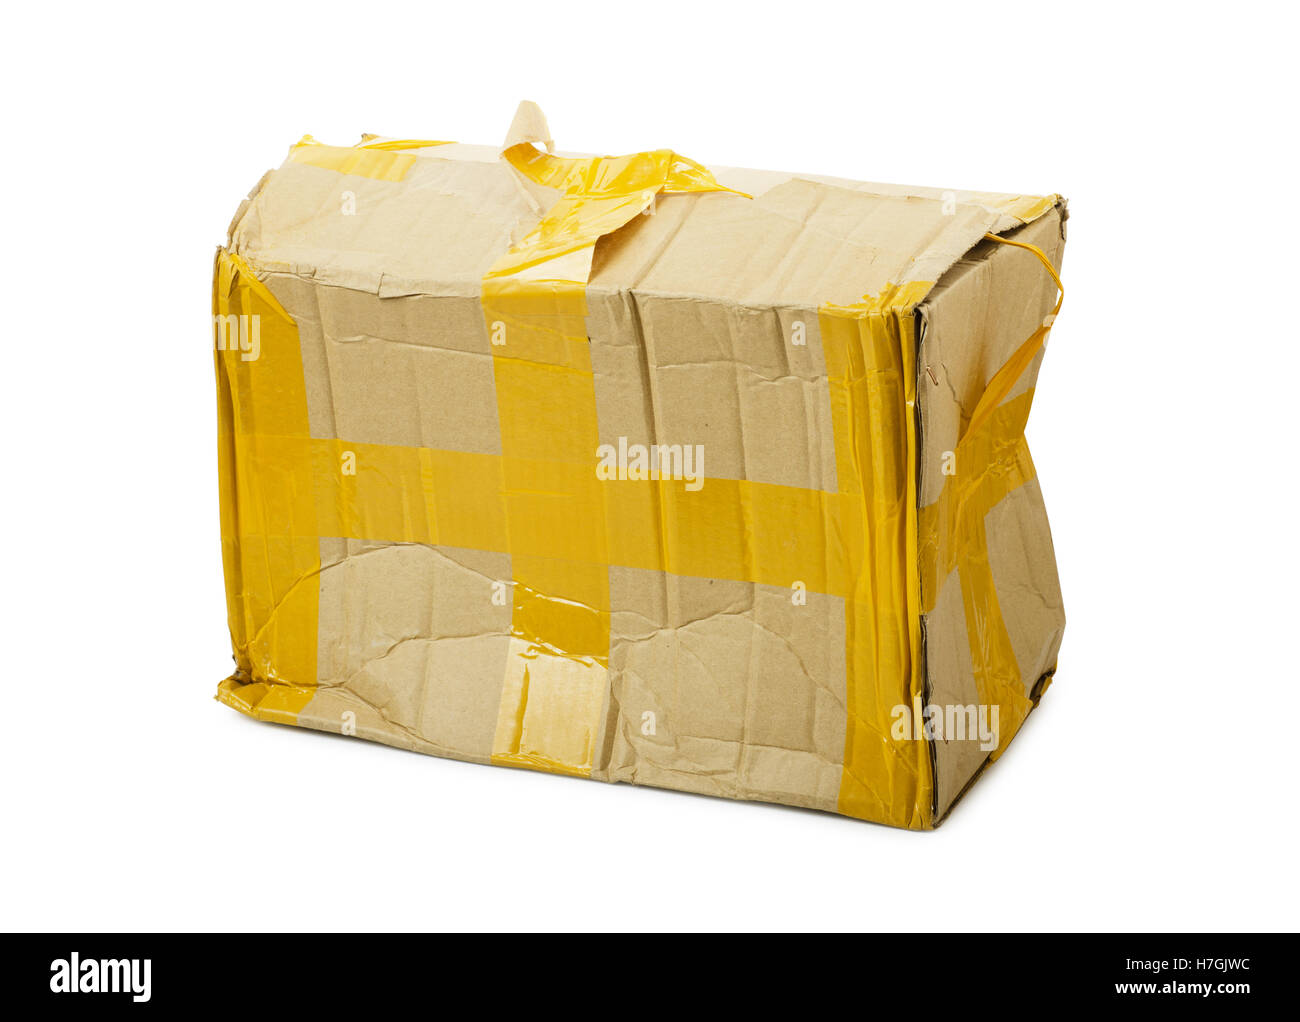 Beschädigten Karton isoliert Hintergrund Stockfotografie - Alamy